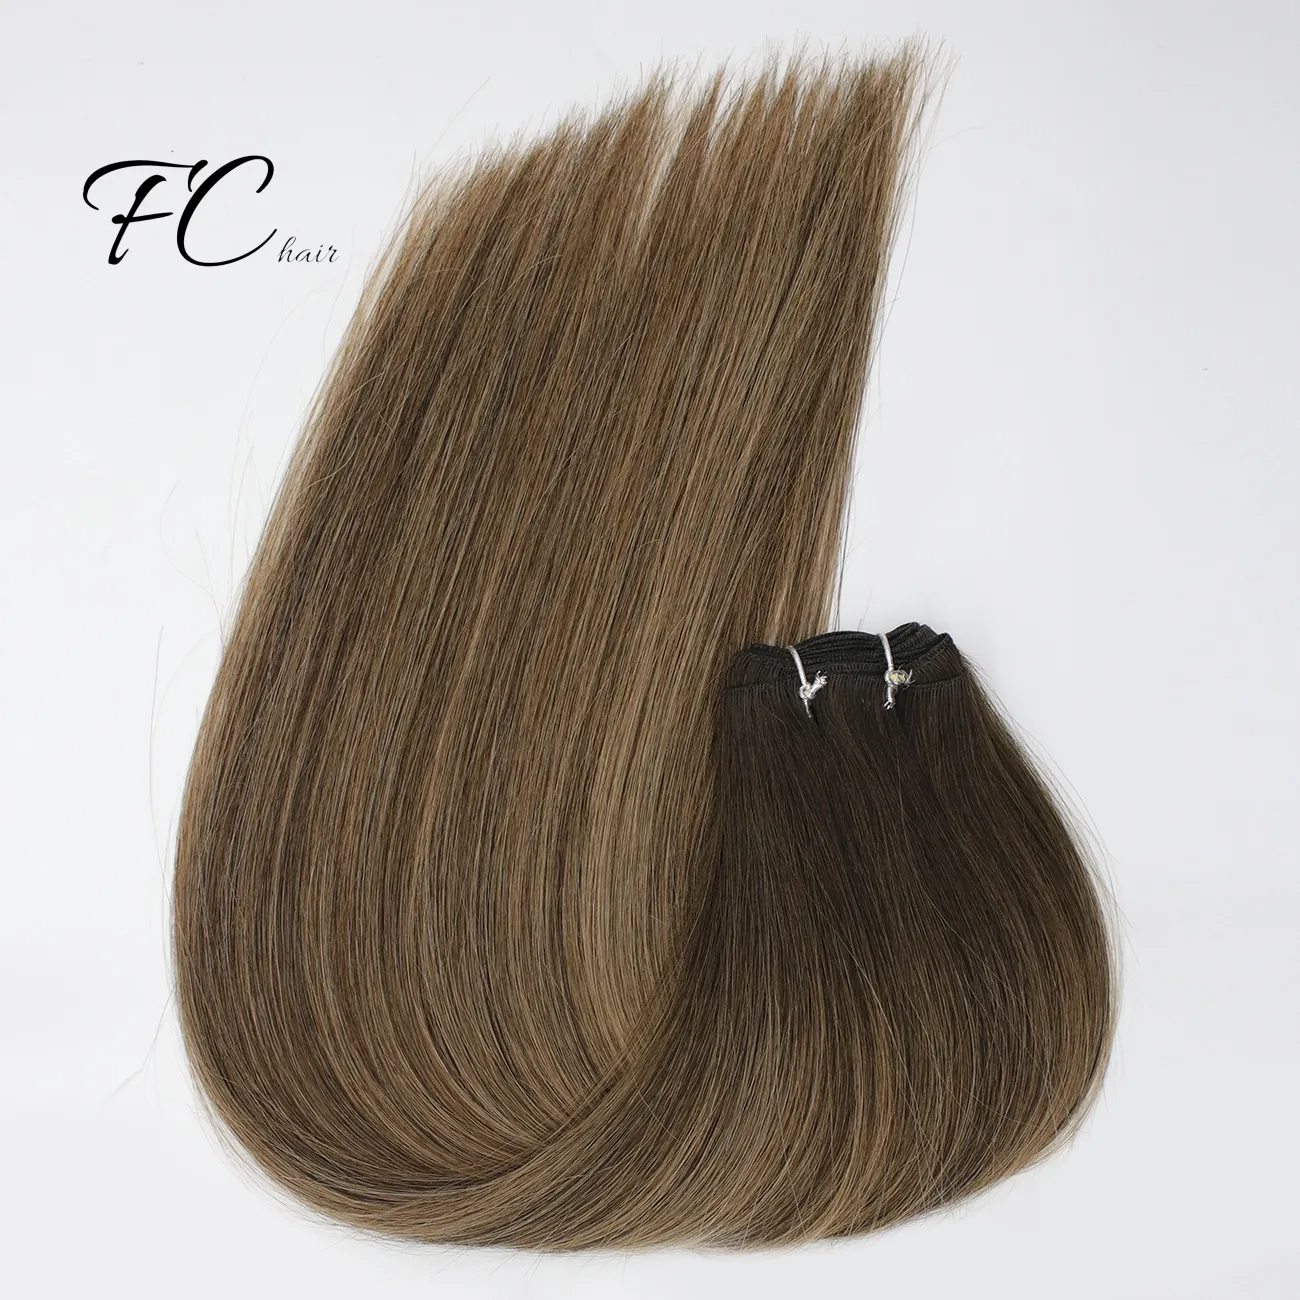 FangCun में टेप बाल एक्सटेंशन मानव बाल सीधे मशीन रेमी यूरोपीय प्राकृतिक सहज त्वचा कपड़ा 10 "-20" रंग मिश्रण 10/20